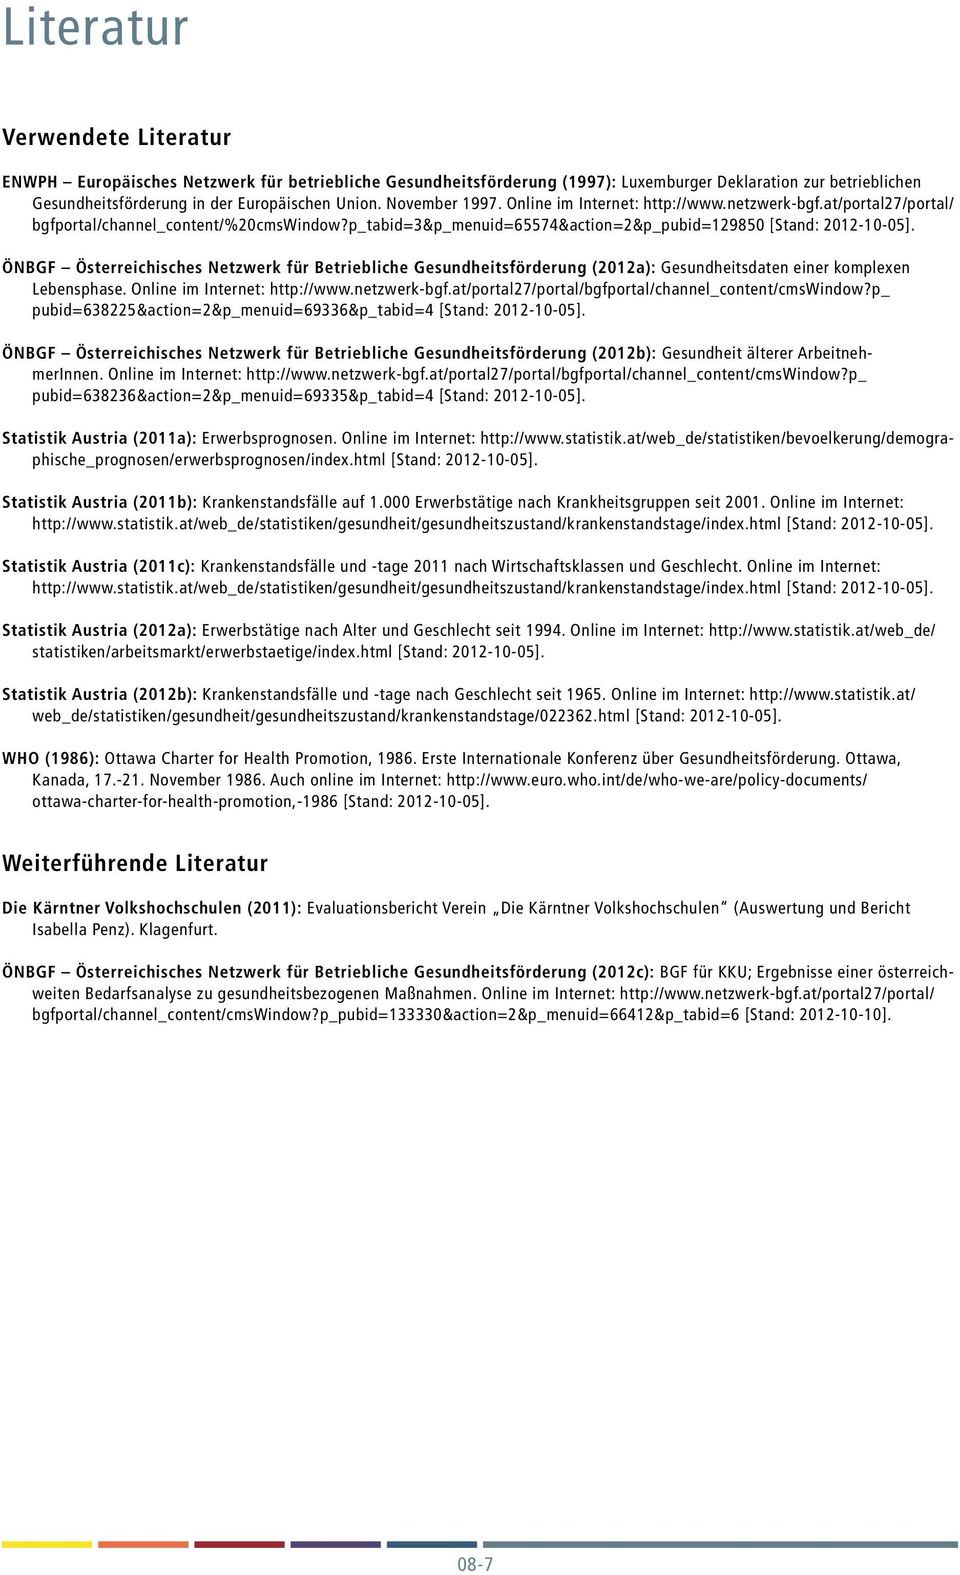 ÖNBGF Österreichisches Netzwerk für Betriebliche Gesundheitsförderung (2012a): Gesundheitsdaten einer komplexen Lebensphase. Online im Internet: http://www.netzwerk-bgf.